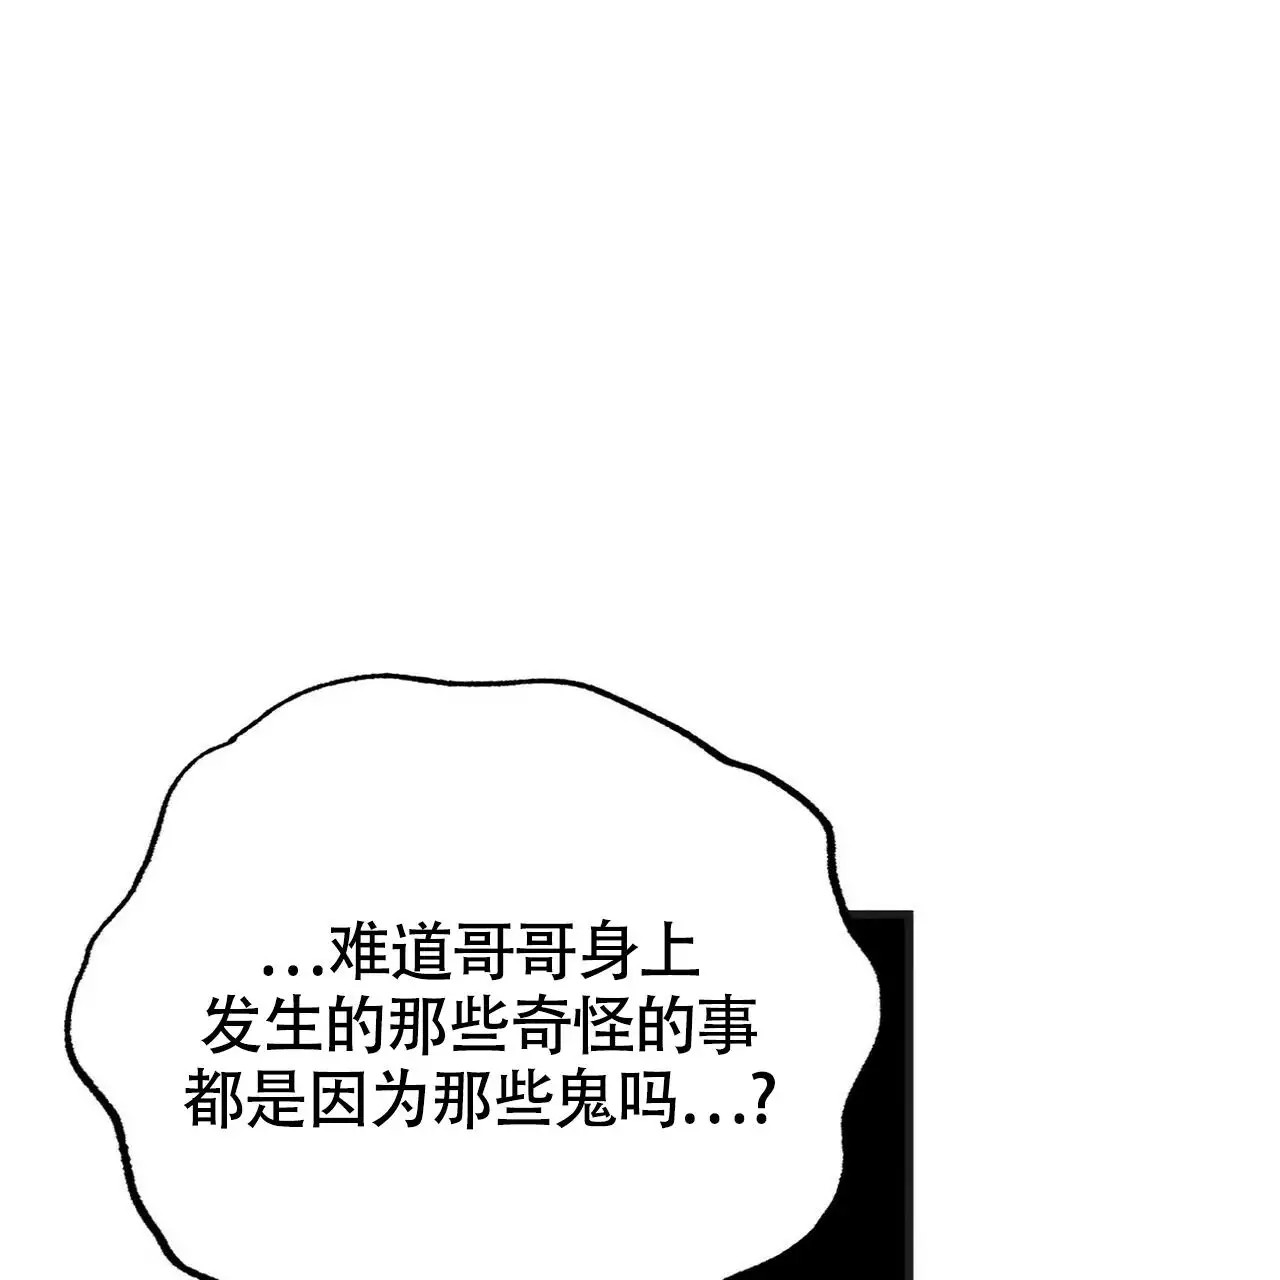 百日夜话-BL彩虹漫画免费阅读-百日夜话漫画完整版